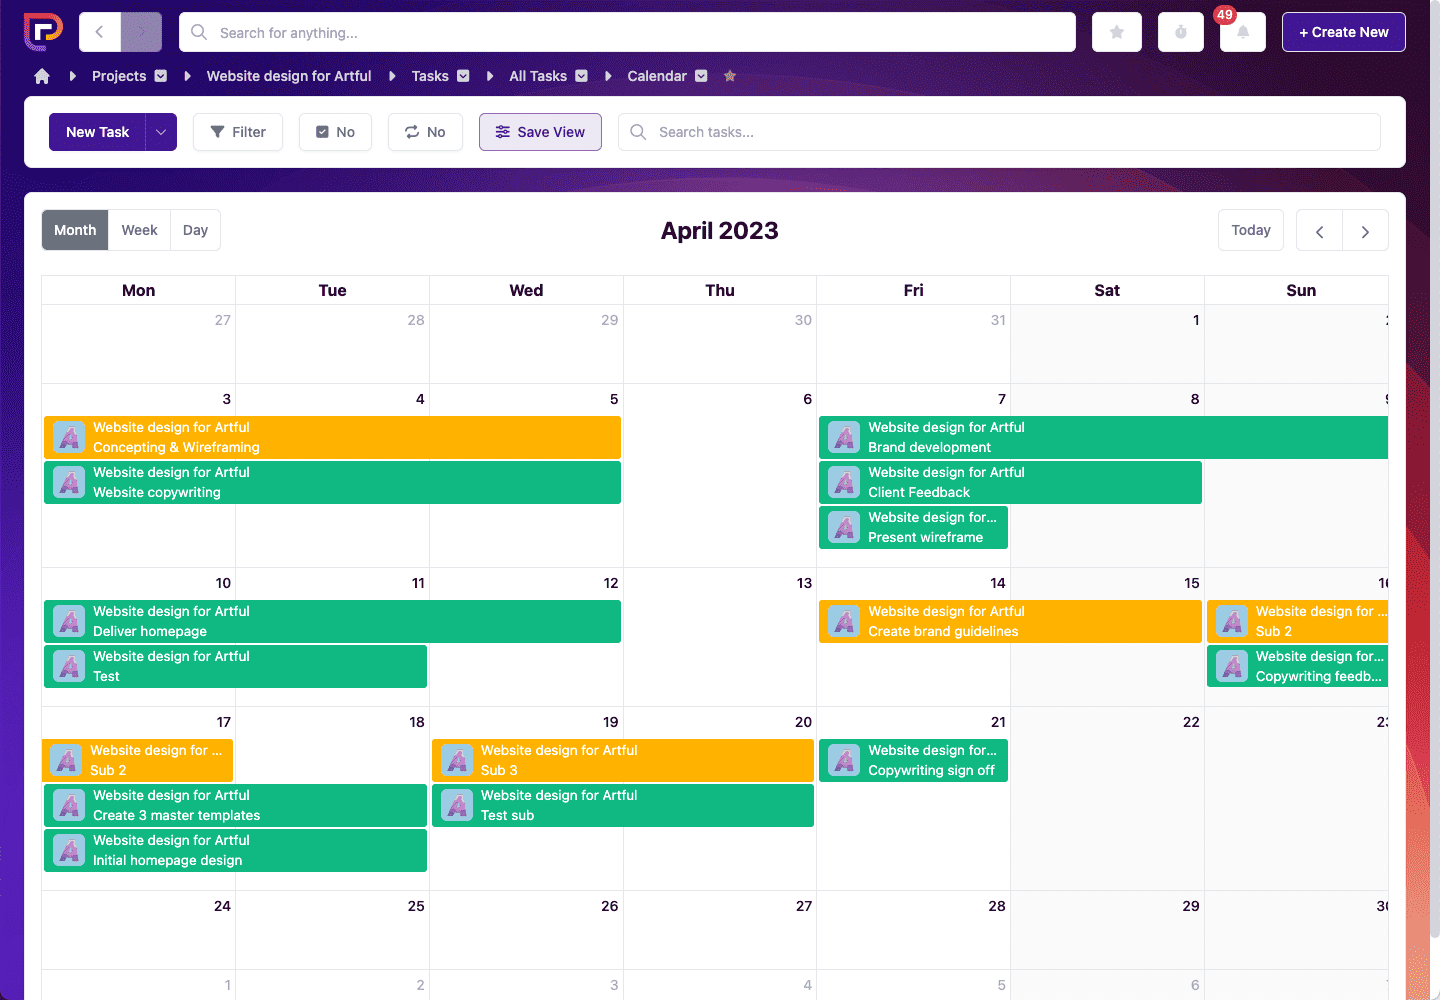 Calendar View